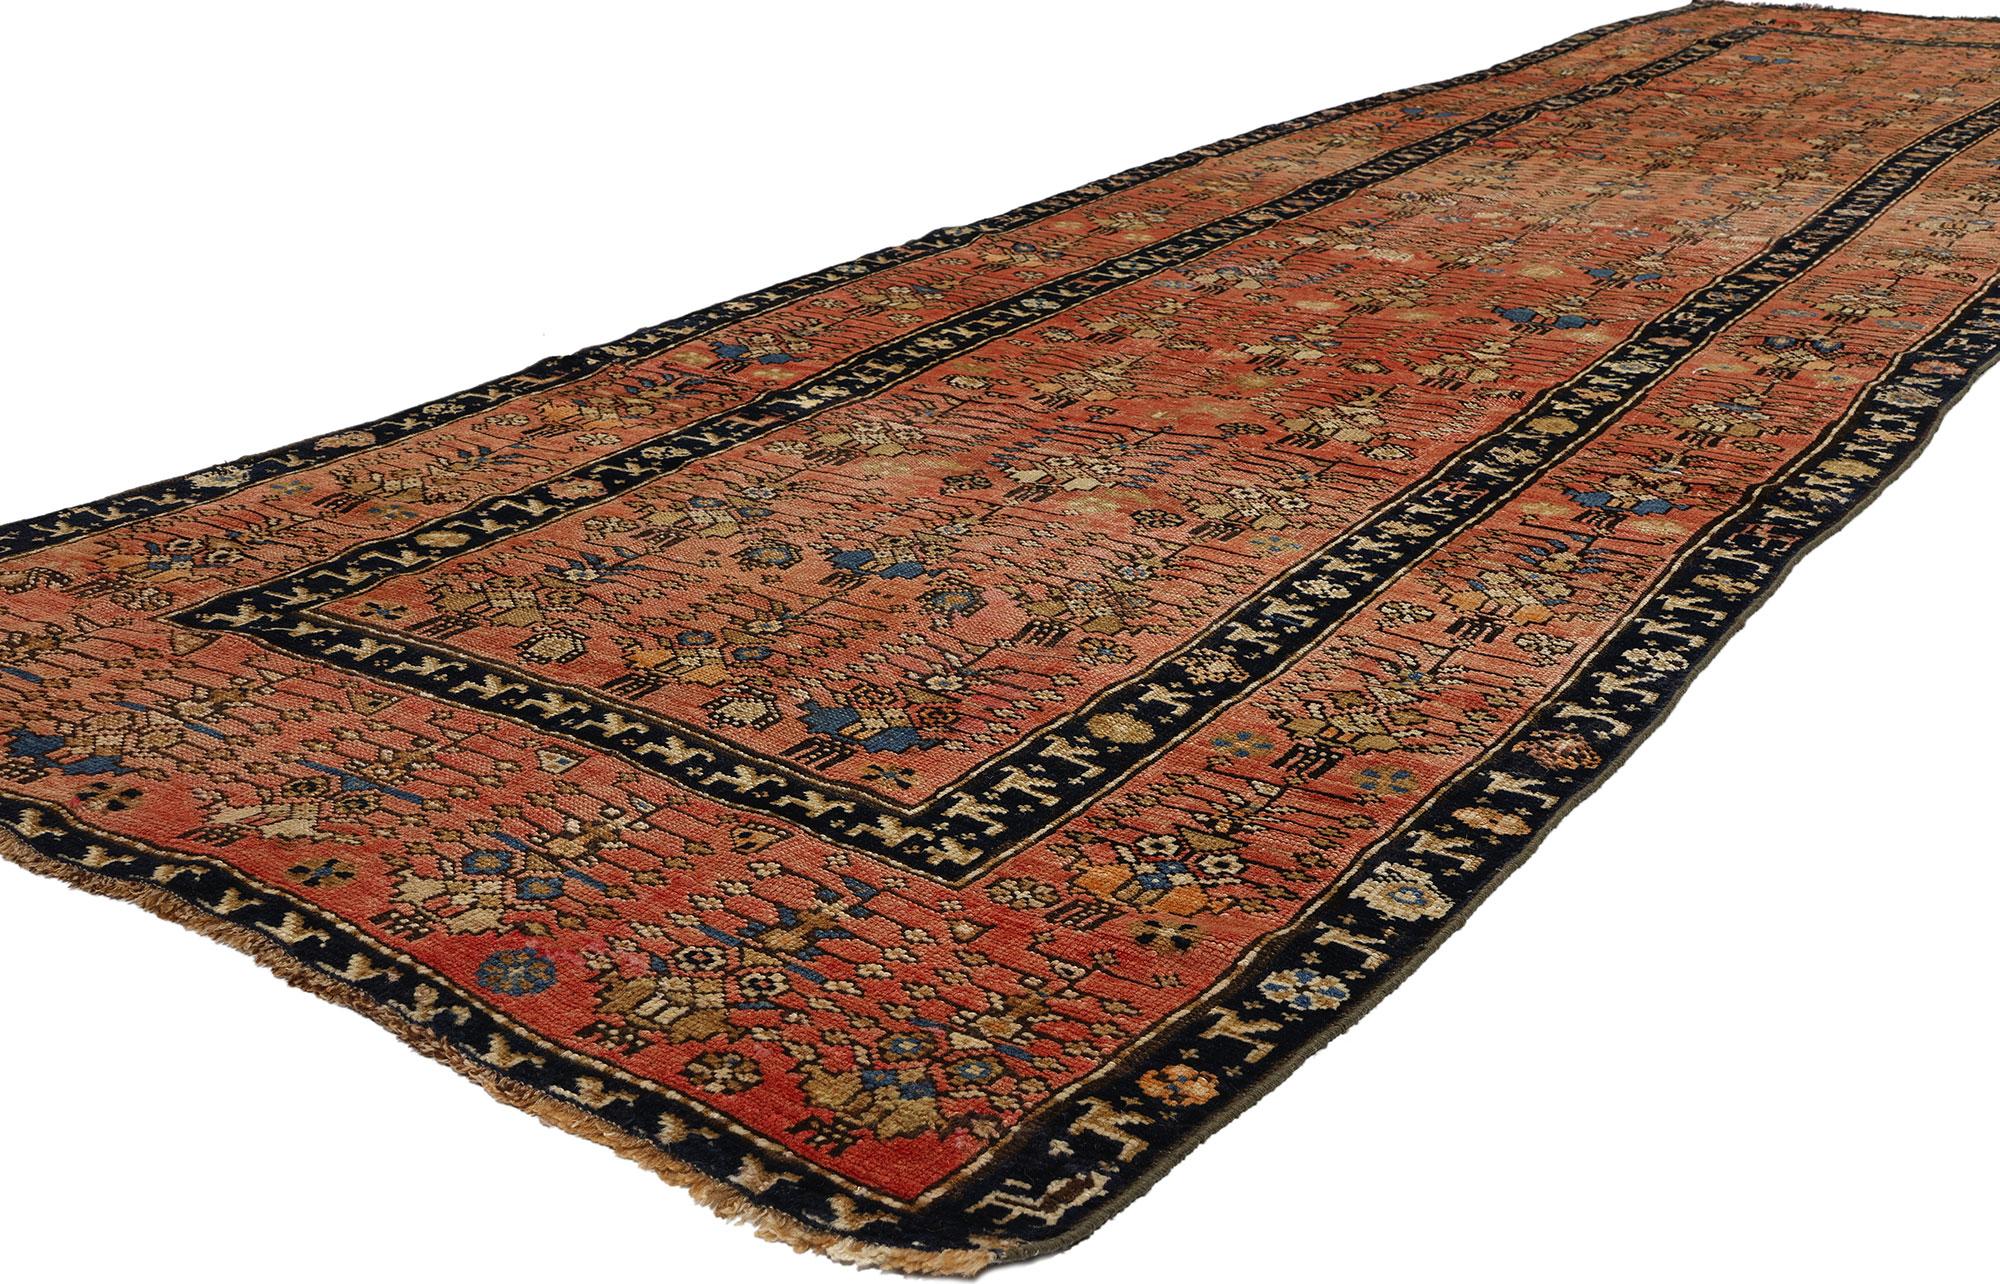 53878 Antique Caucasian Karabagh Rug Runner, 03'09 x 14'01. Les tapis du Karabagh caucasien sont des tapis traditionnels tissés à la main, originaires de la région historique du Karabagh, située dans l'actuel Azerbaïdjan. Ils sont réputés pour leurs